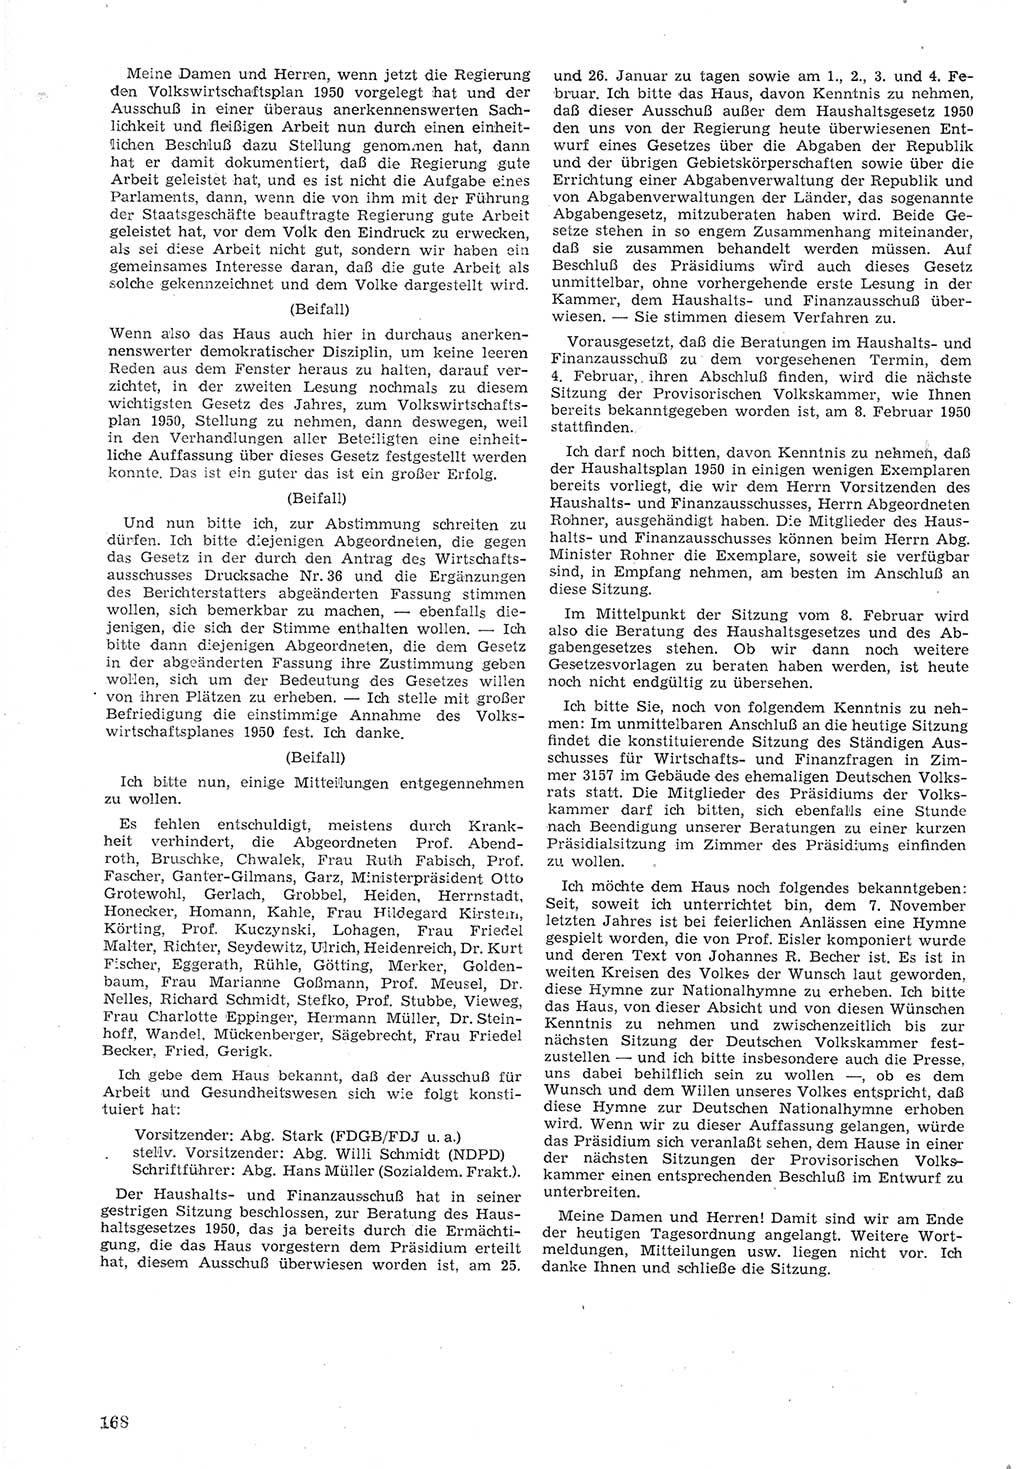 Provisorische Volkskammer (VK) der Deutschen Demokratischen Republik (DDR) 1949-1950, Dokument 180 (Prov. VK DDR 1949-1950, Dok. 180)